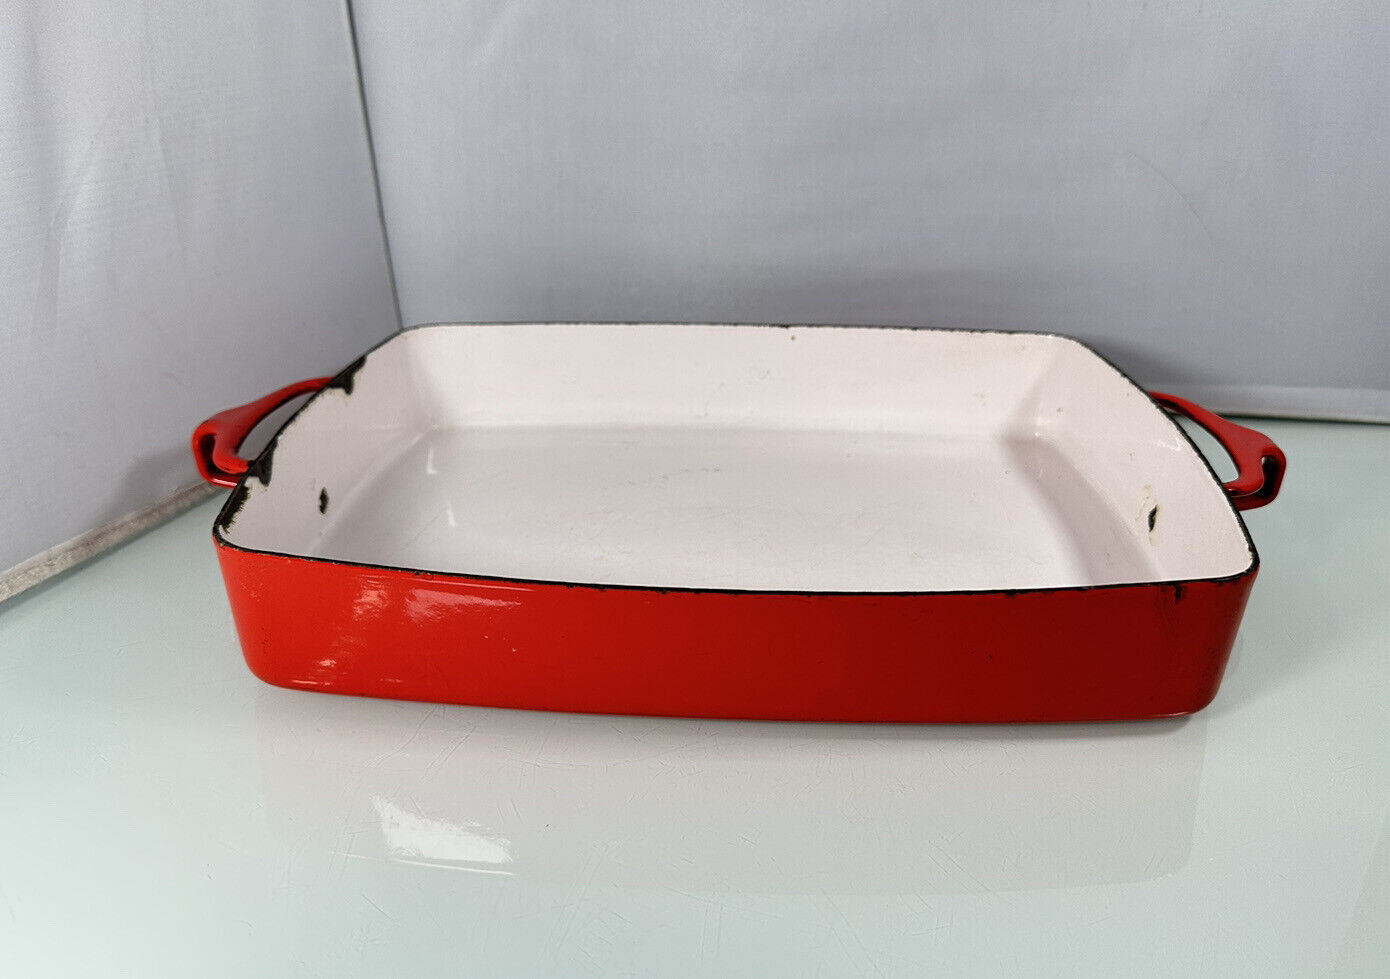 Vintage Dansk Designs France JHQ Enamel Cast Casserole Baker Dish 13” x 10” Red